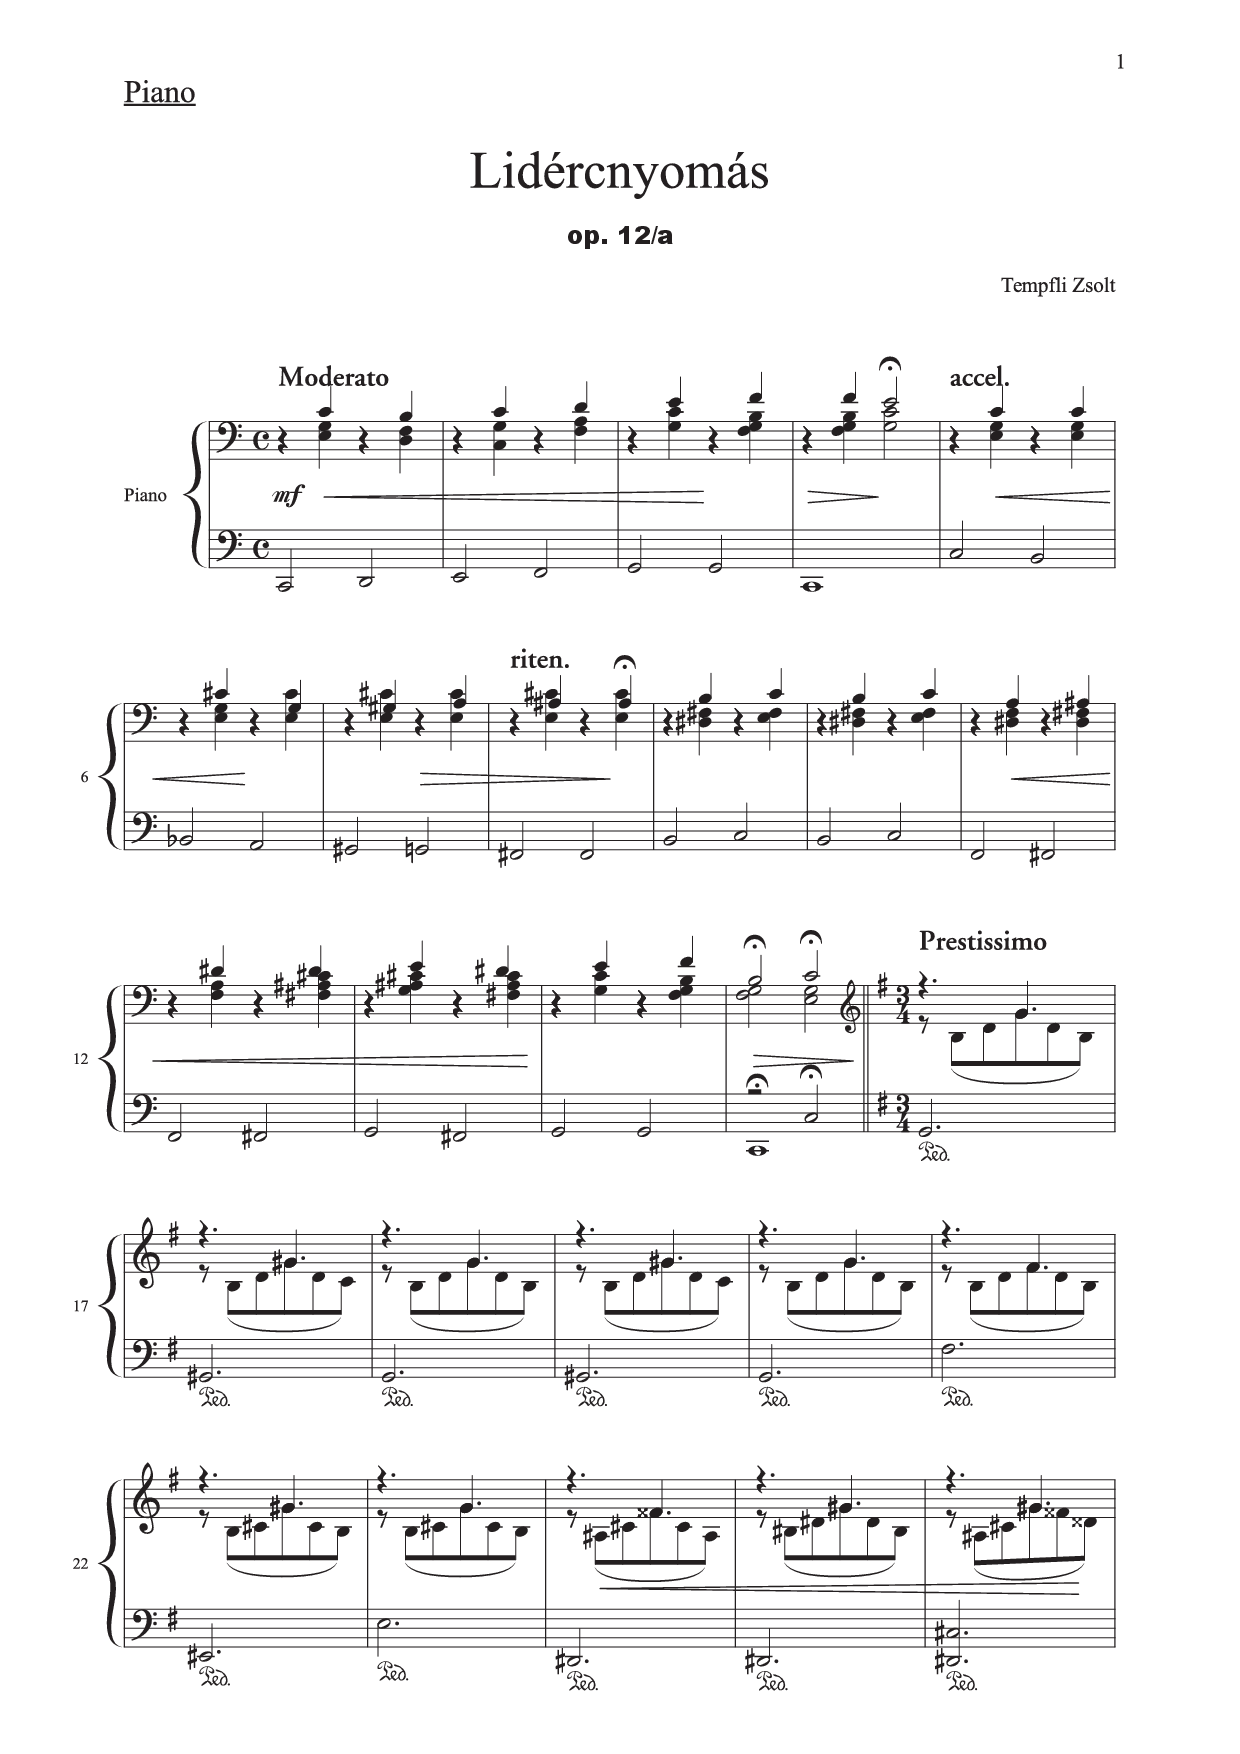 Zsolt Tempfli: Coşmarul nr. 1 pentru pian, op. 12